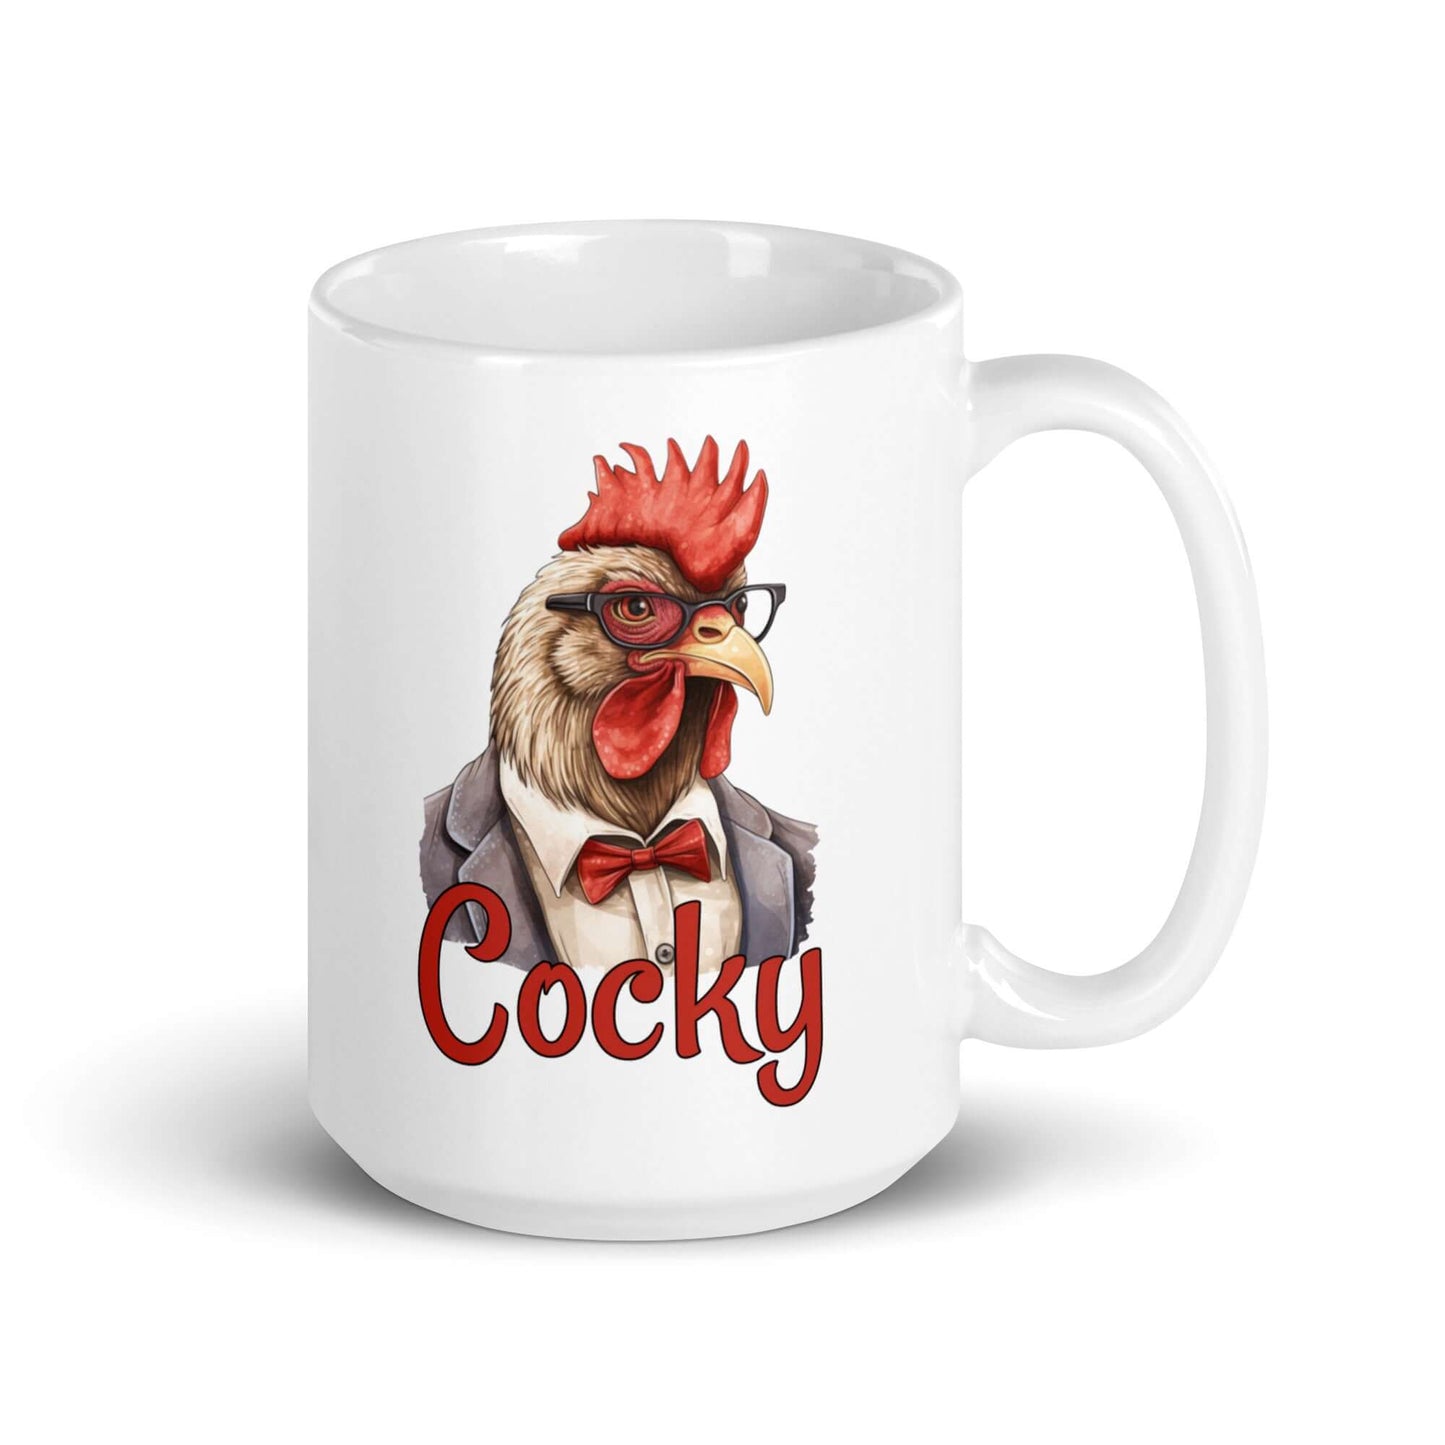 Arrogant rooster mug